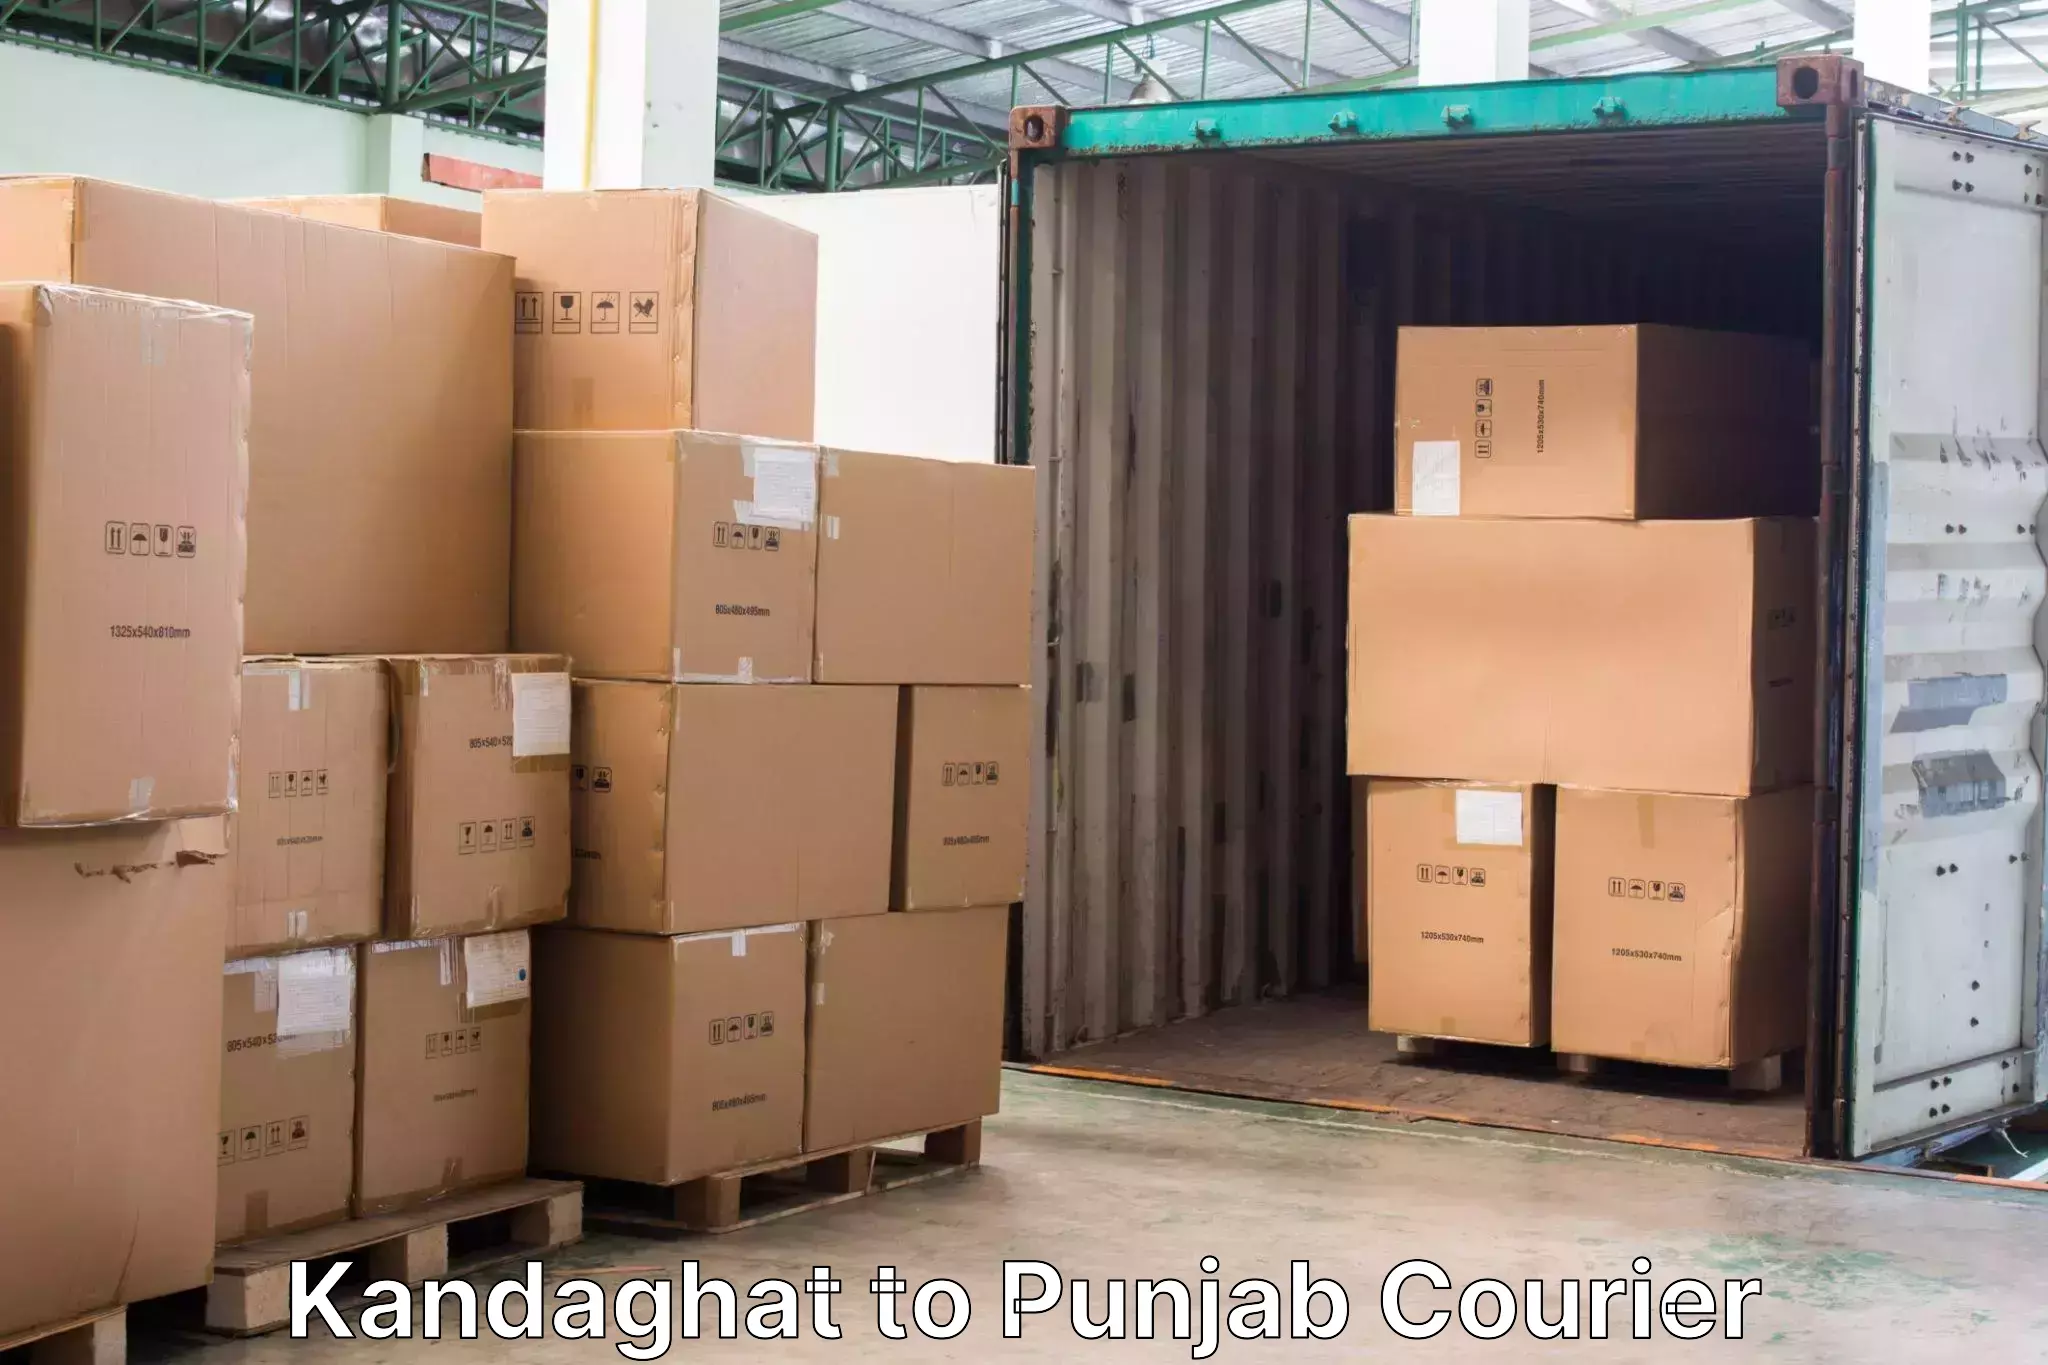 Baggage transport professionals Kandaghat to Abohar